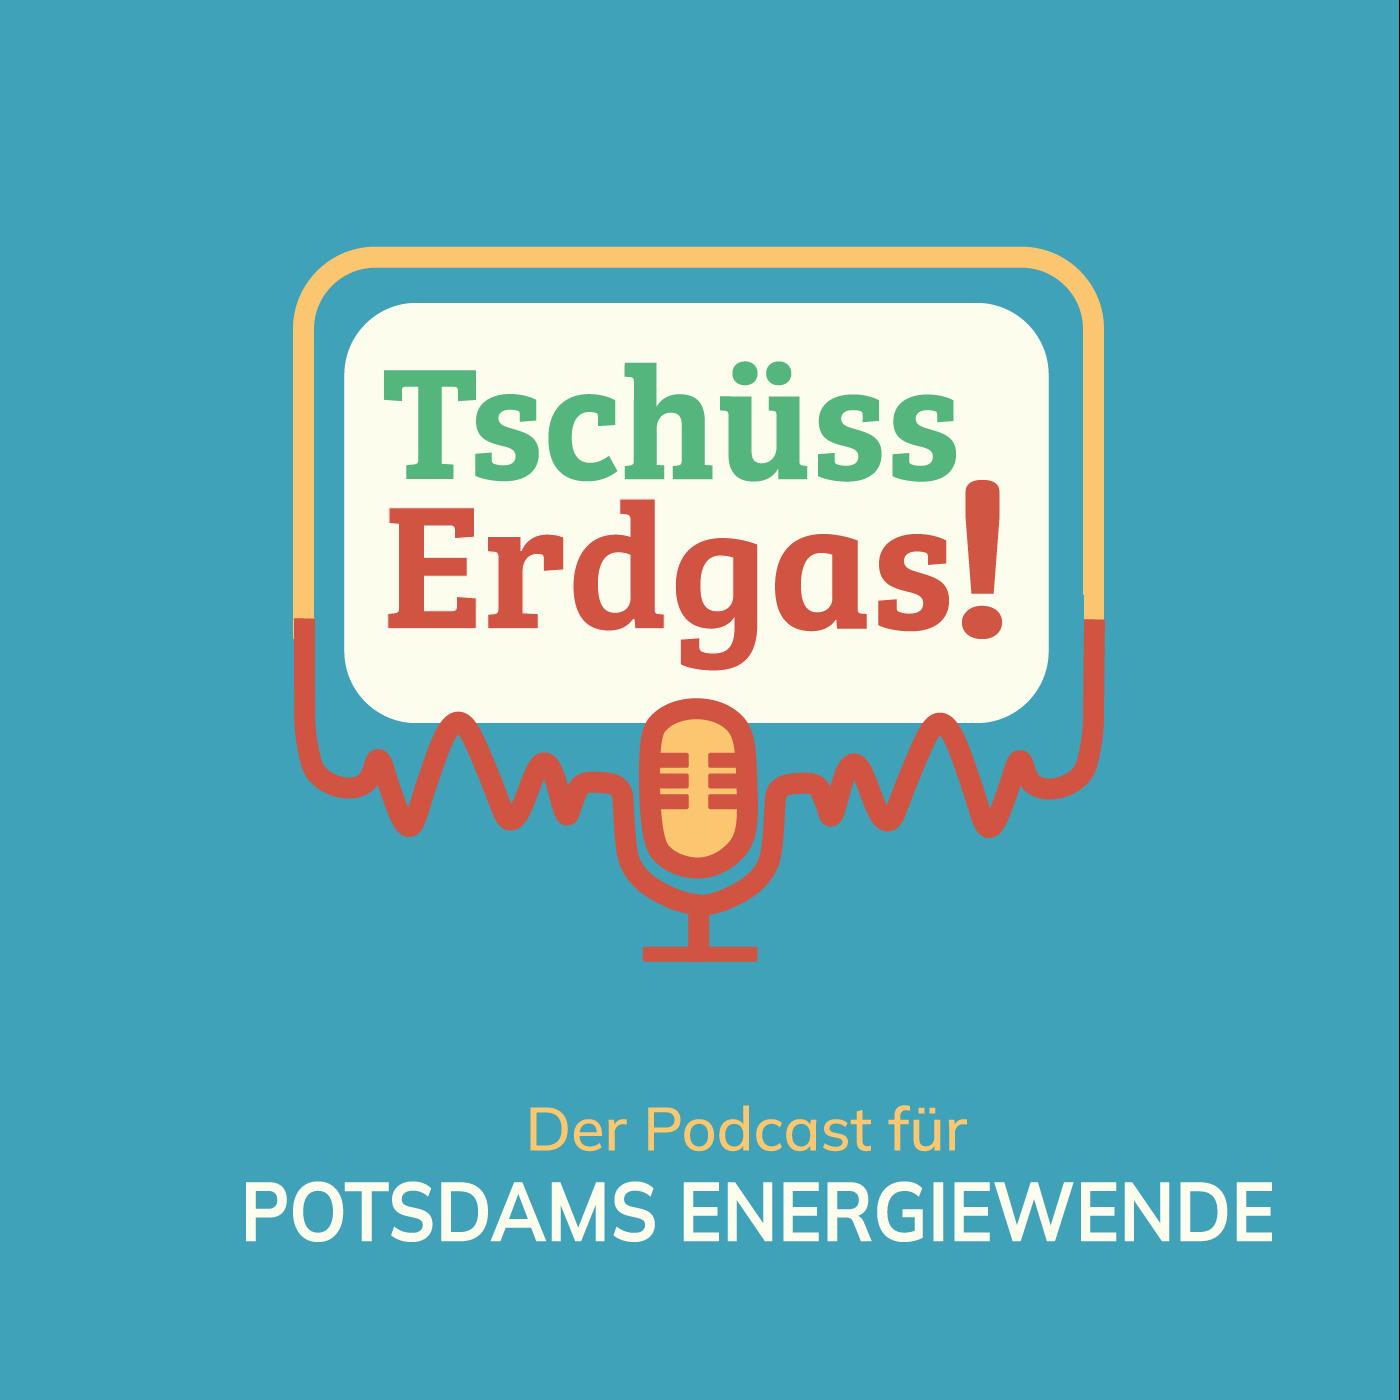 Tschüss Erdgas! – Der Podcast für Potsdams Energiewende